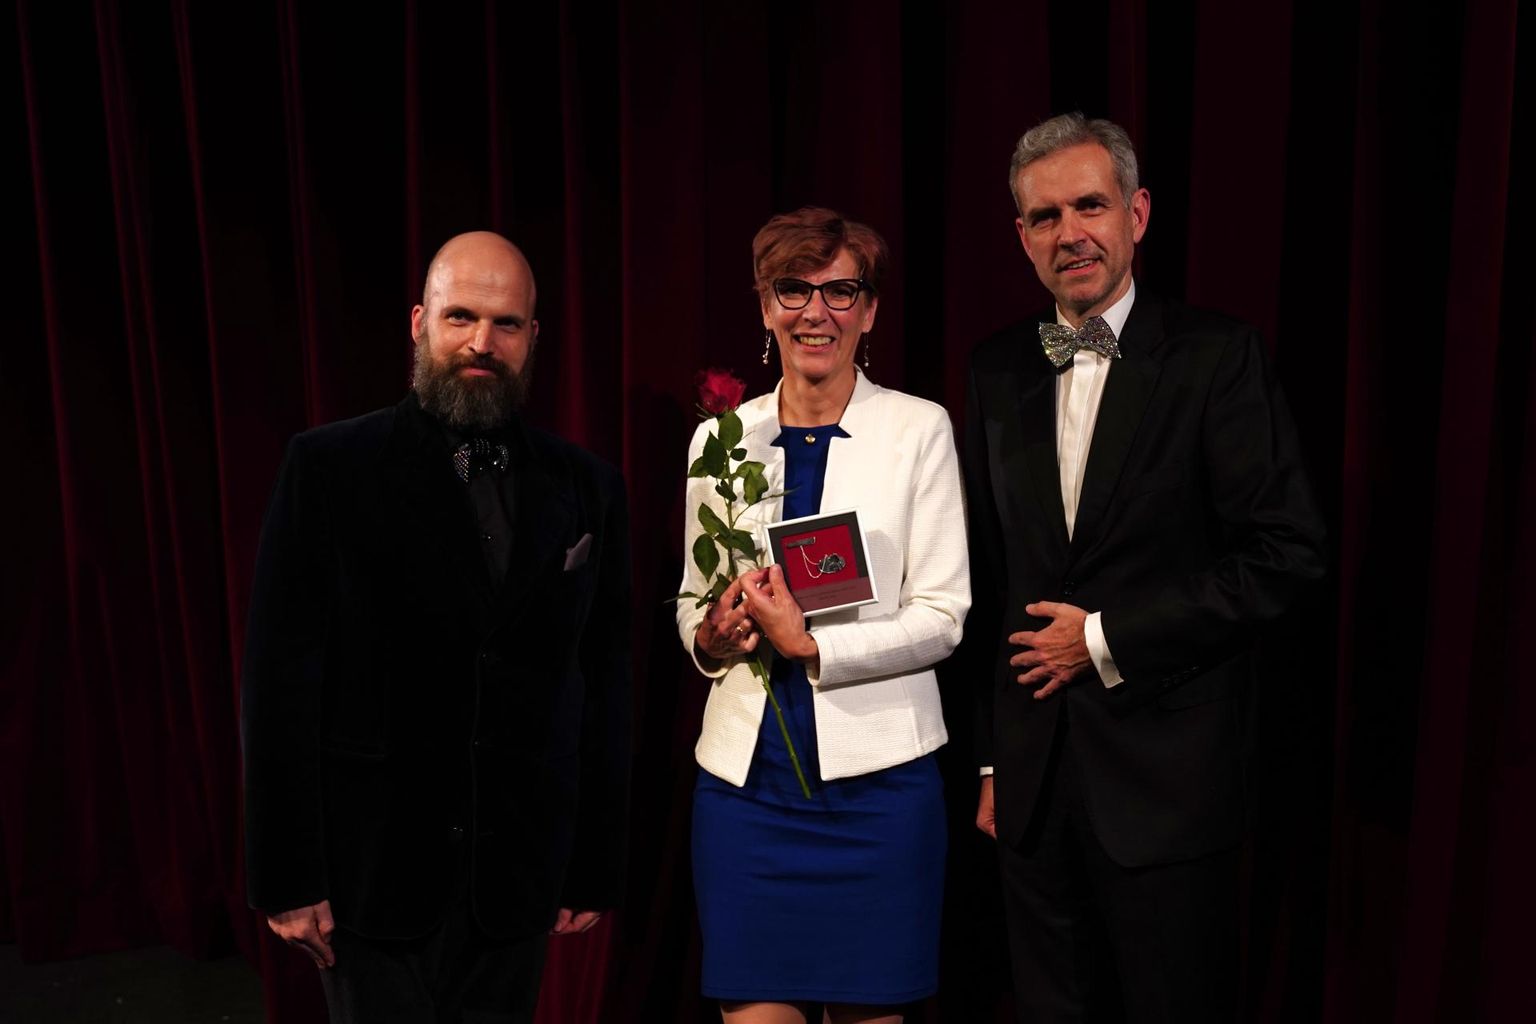 Teatritruuduse ordeni andsid Katrin Satsile üle Rakvere teatri juht Velvo Väli (paremal) ja kunstiline juht Peeter Raudsepp.